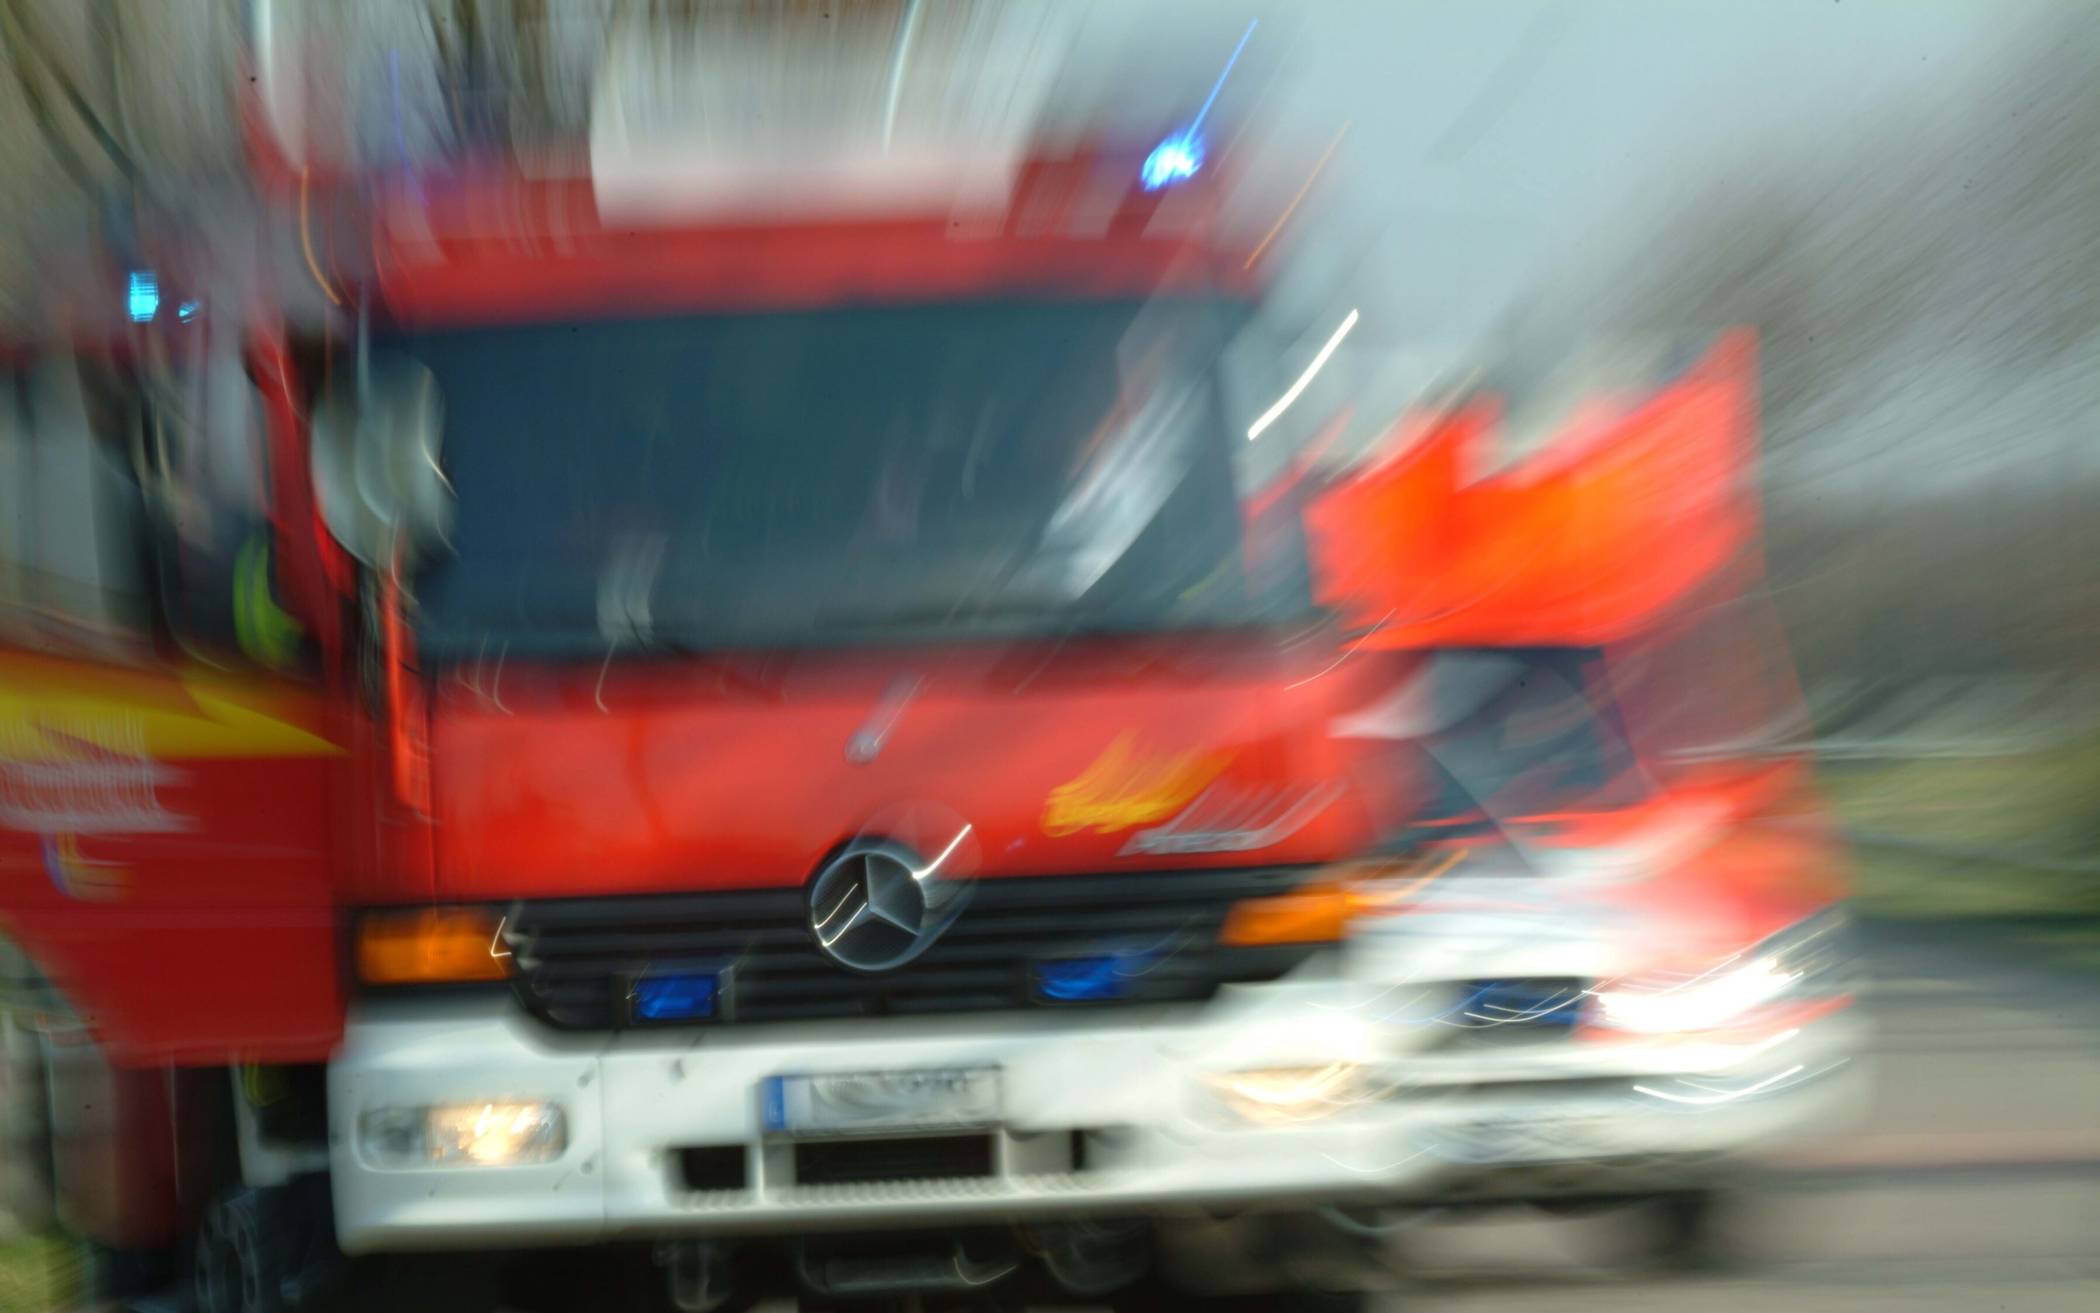 Kinderwagen gerät im Treppenhaus in Brand